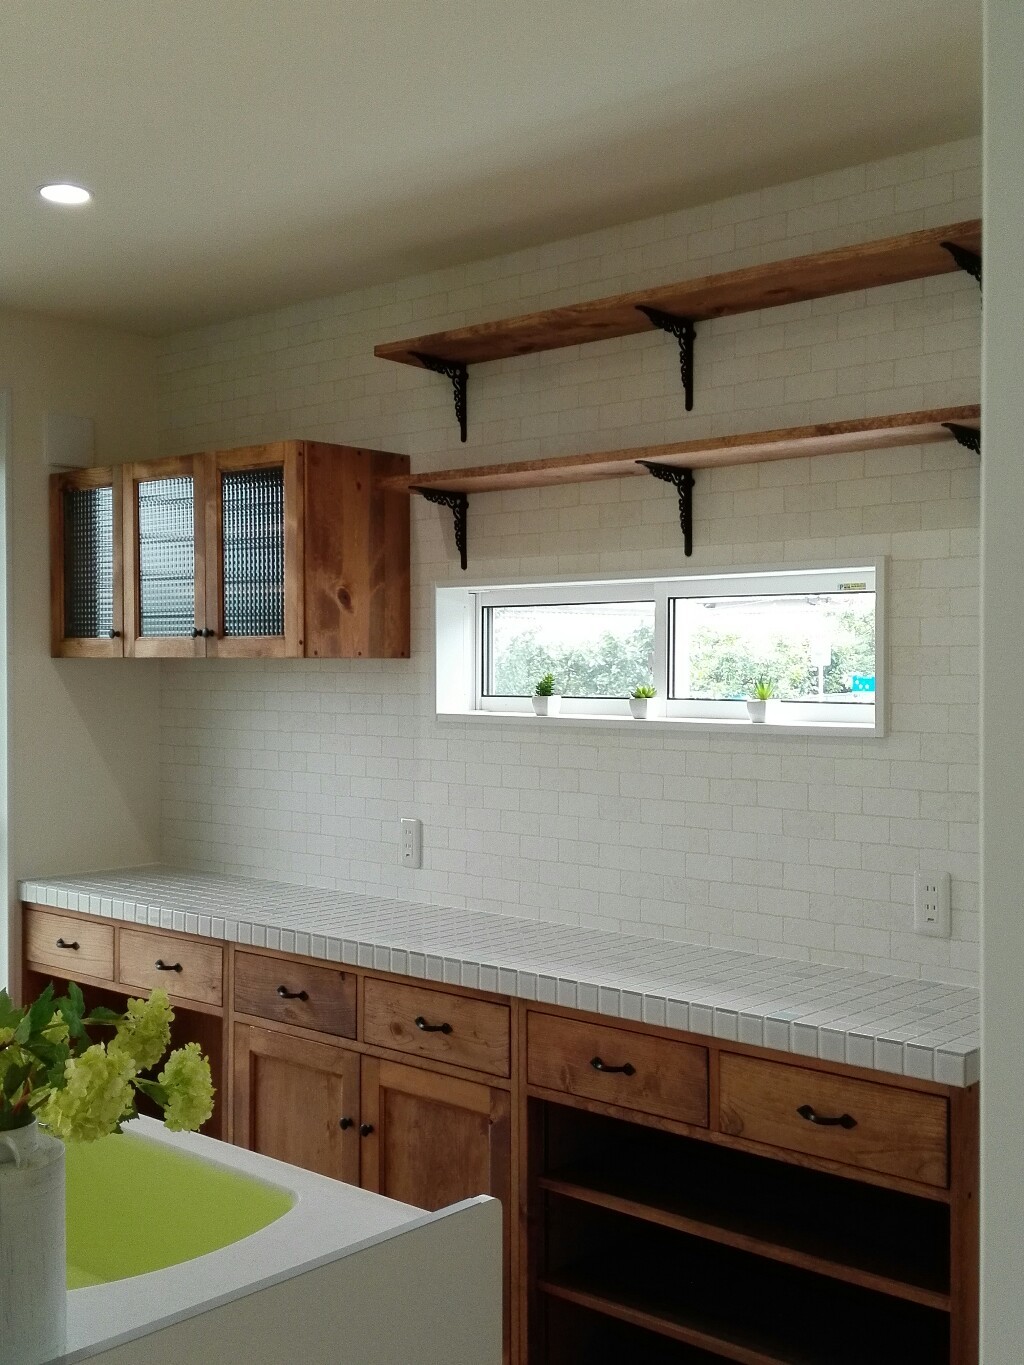 水色と白のタイルトップ キッチンカウンター オーダー家具のkinoka